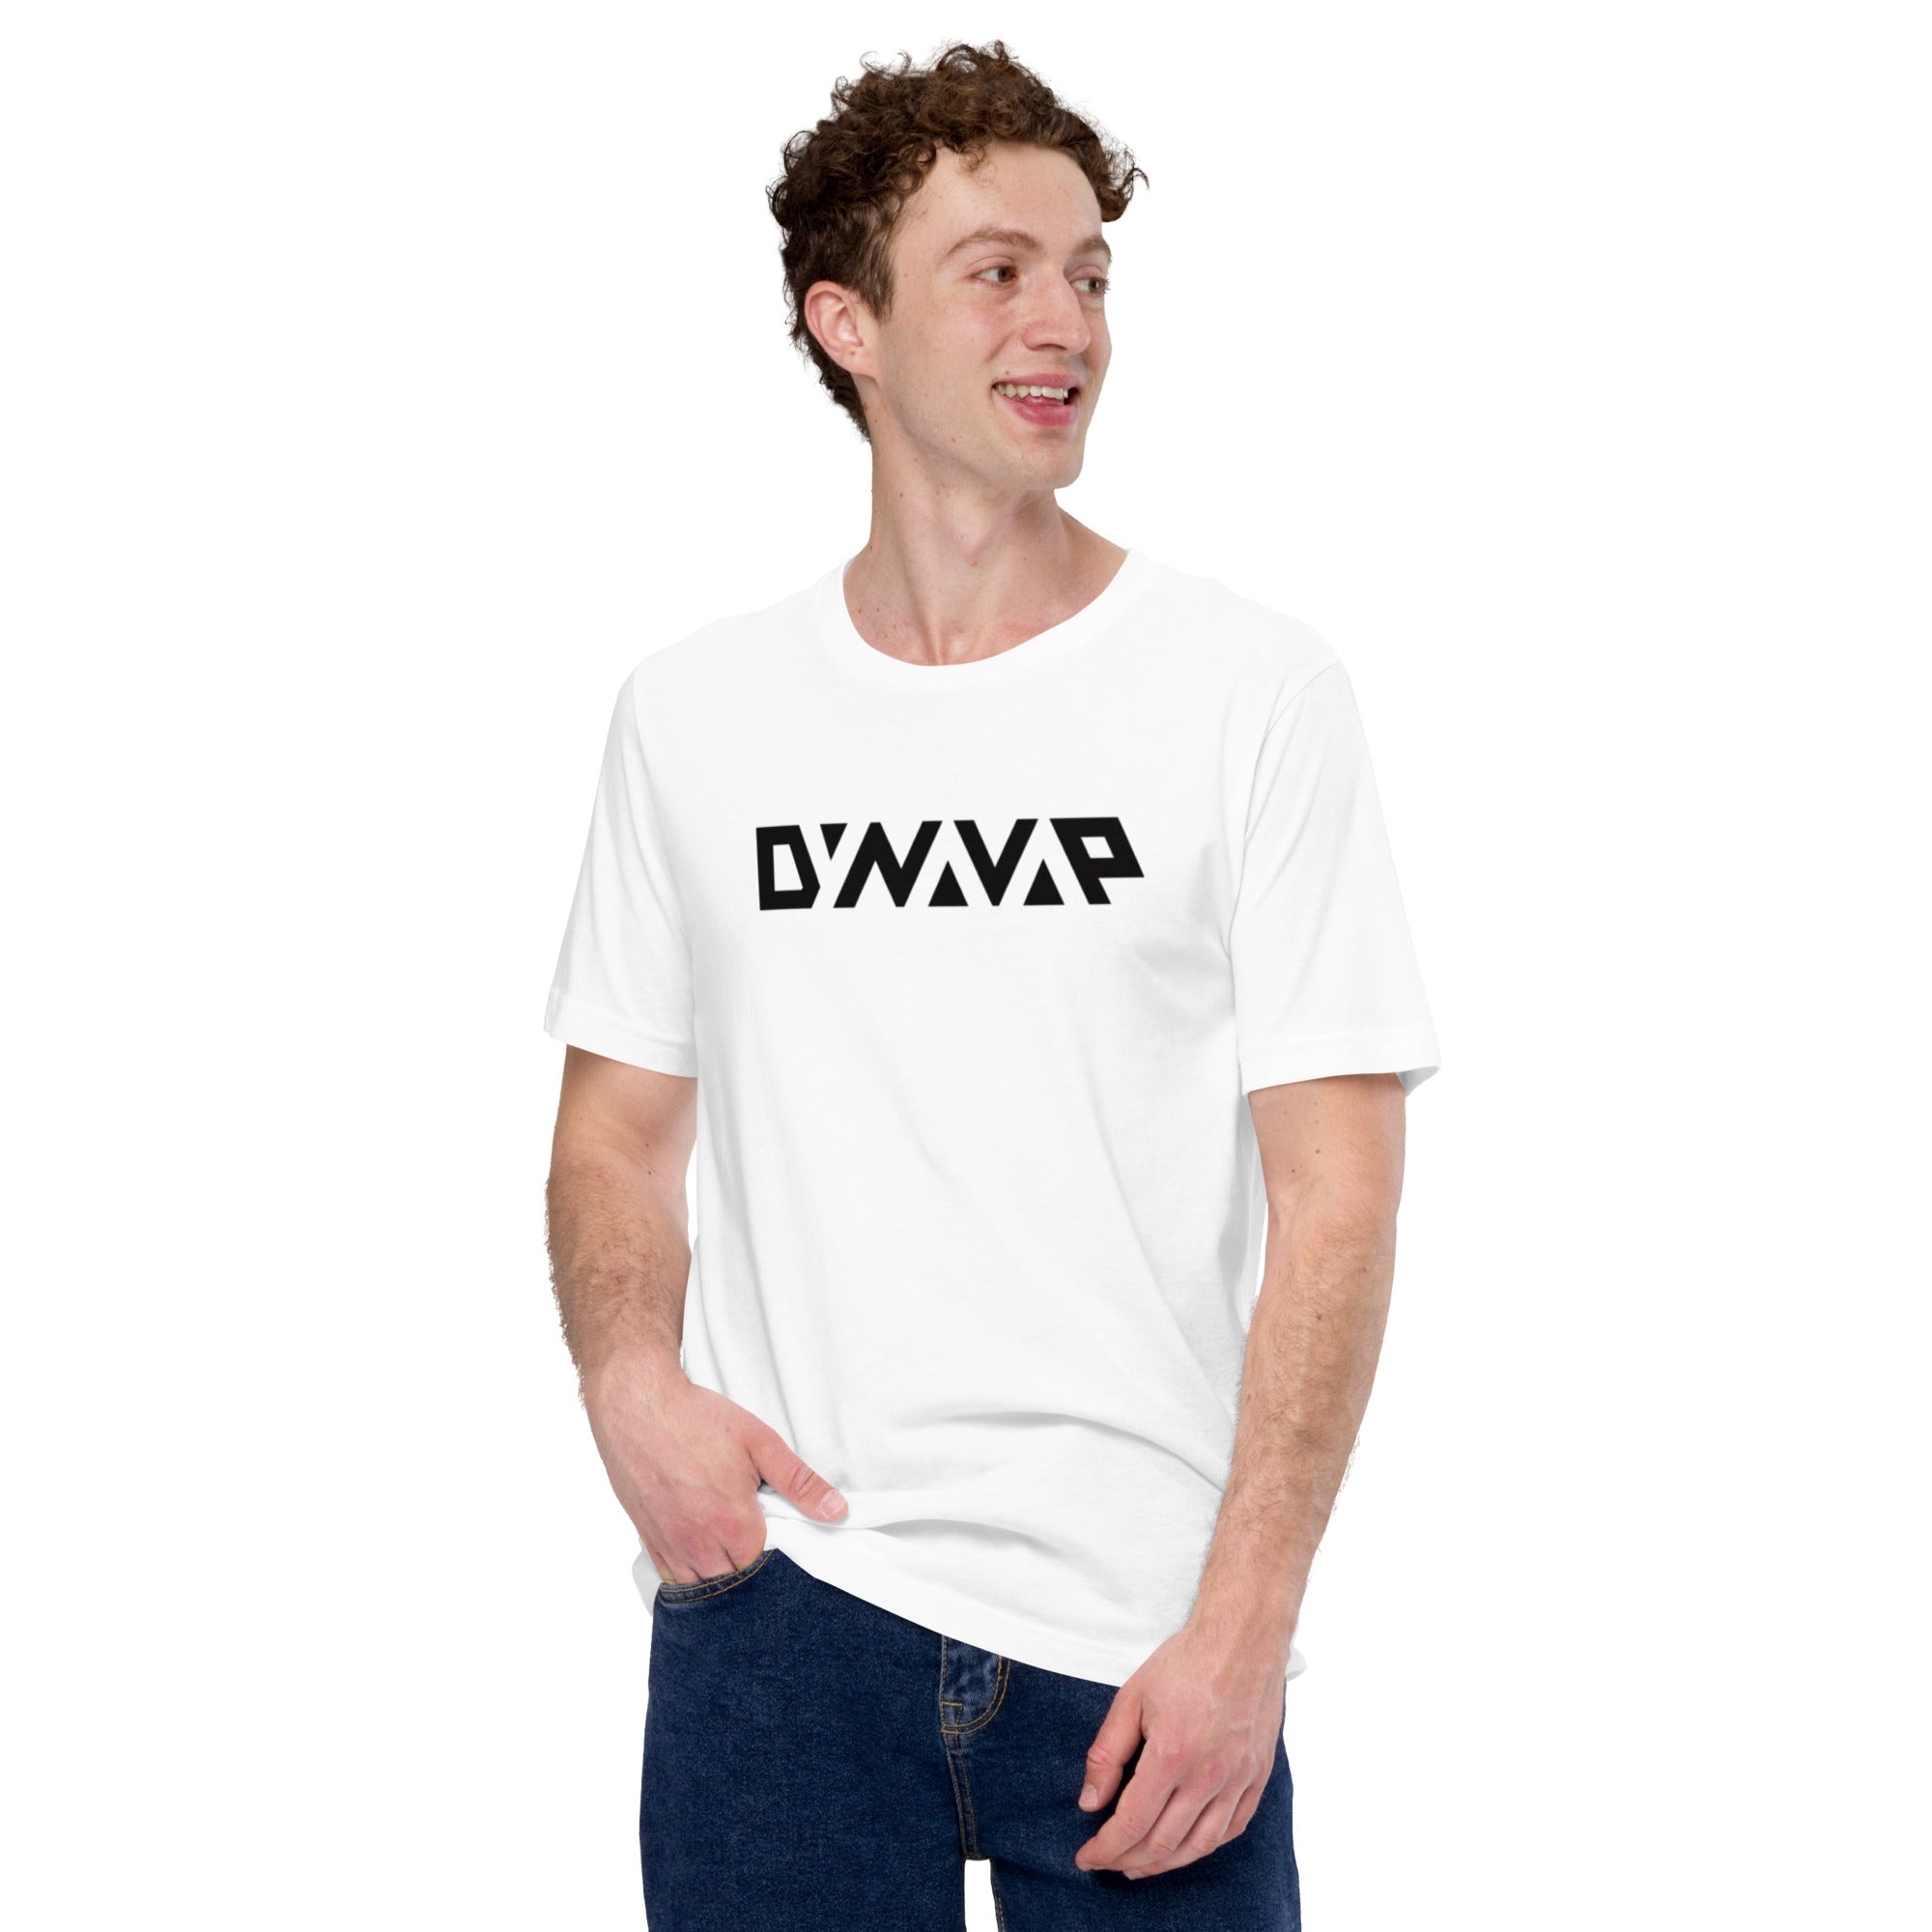 T-Shirt: DynaVap Black Logo